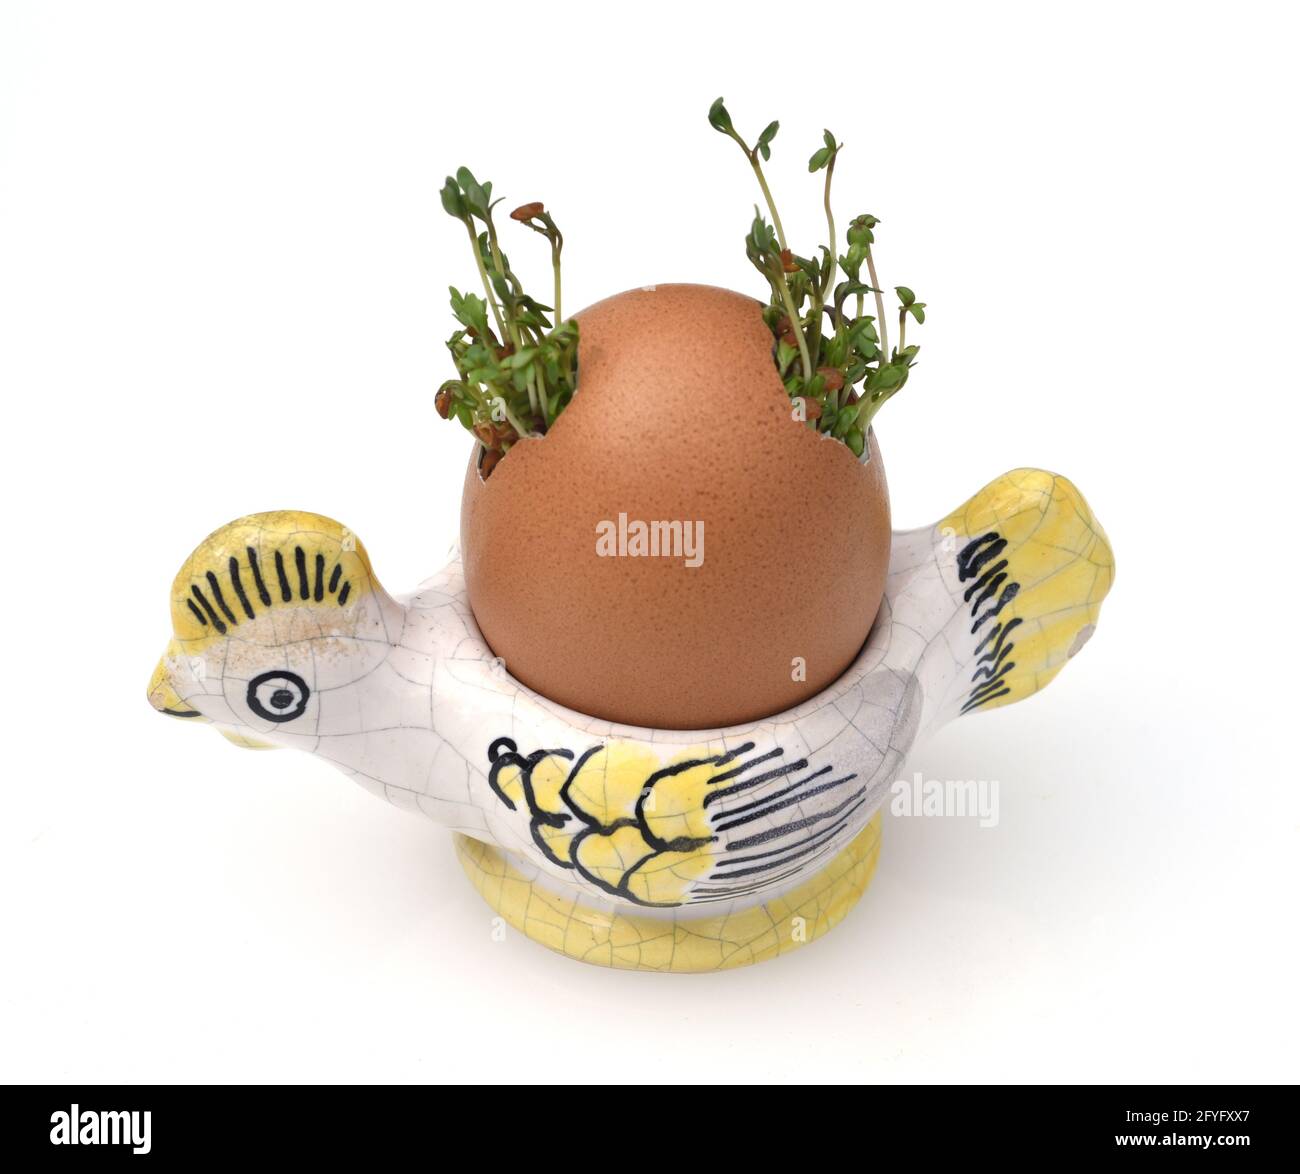 Kresse, Saemling, Lepidium Sativum, ist eine wichtige Heil- und Medizinalpflanze. Zu Ostern ein Spass fuer Kinder in einem Ei gezogen. Cress, seedling Stock Photo